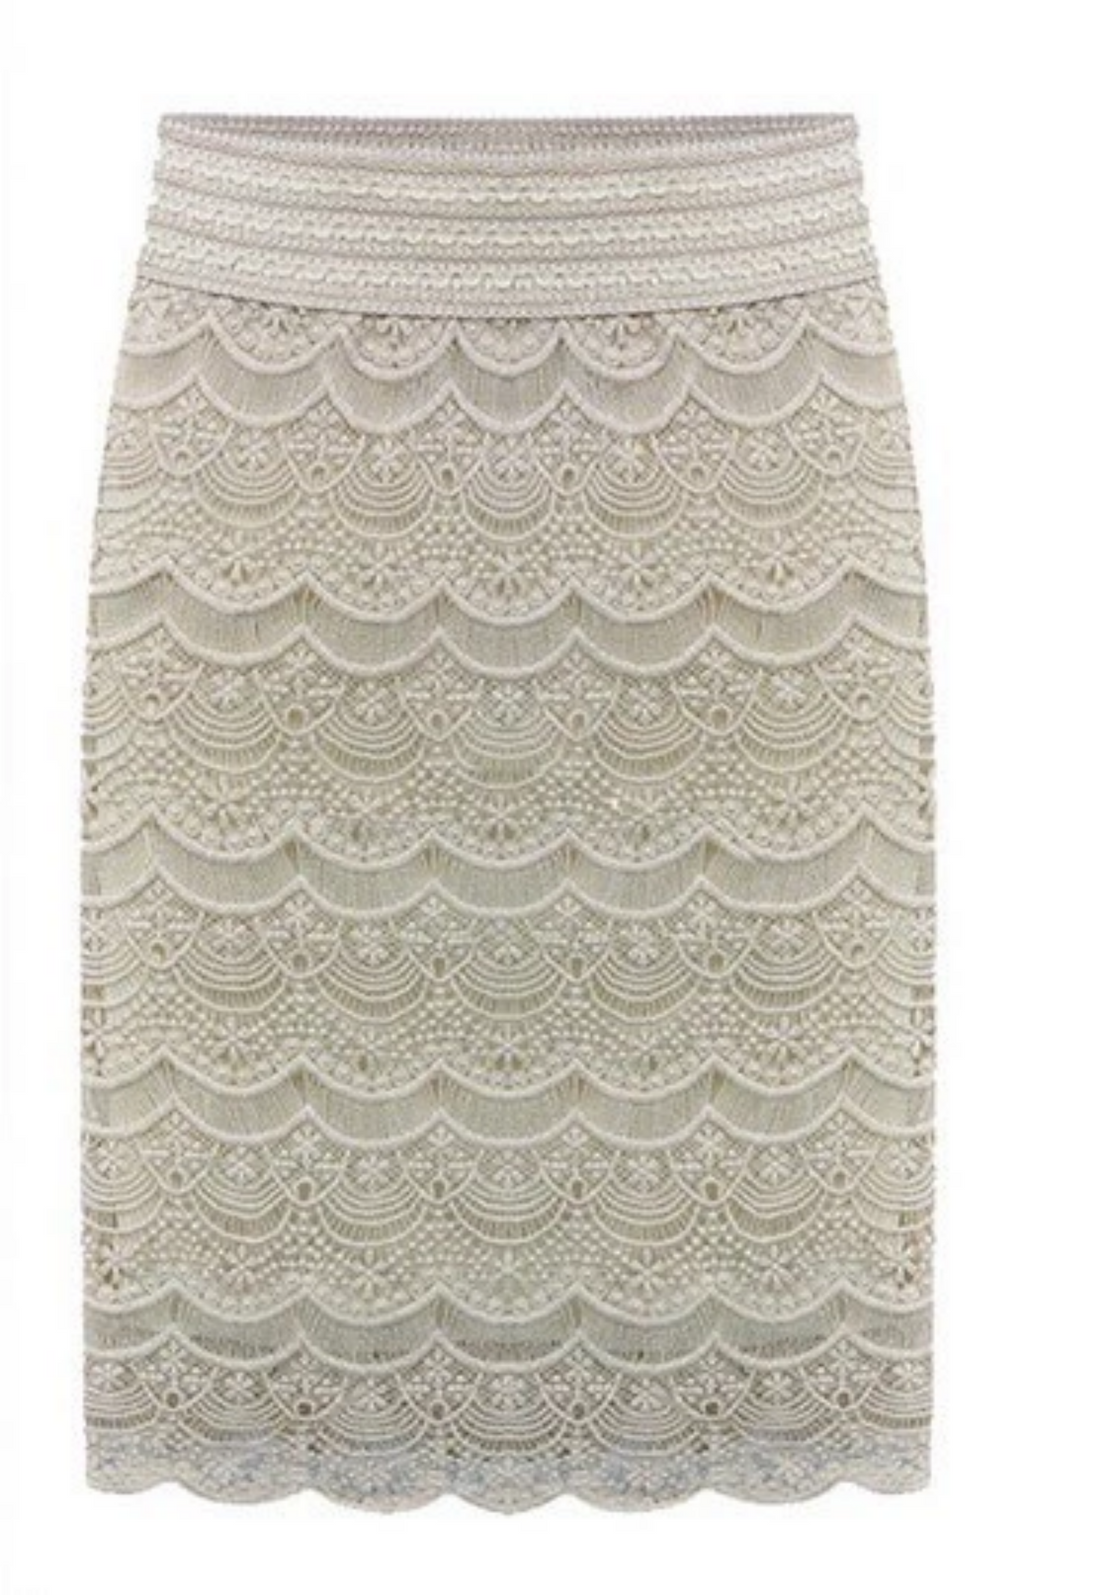 Women's Lace High-Waist Bodycon Skirt